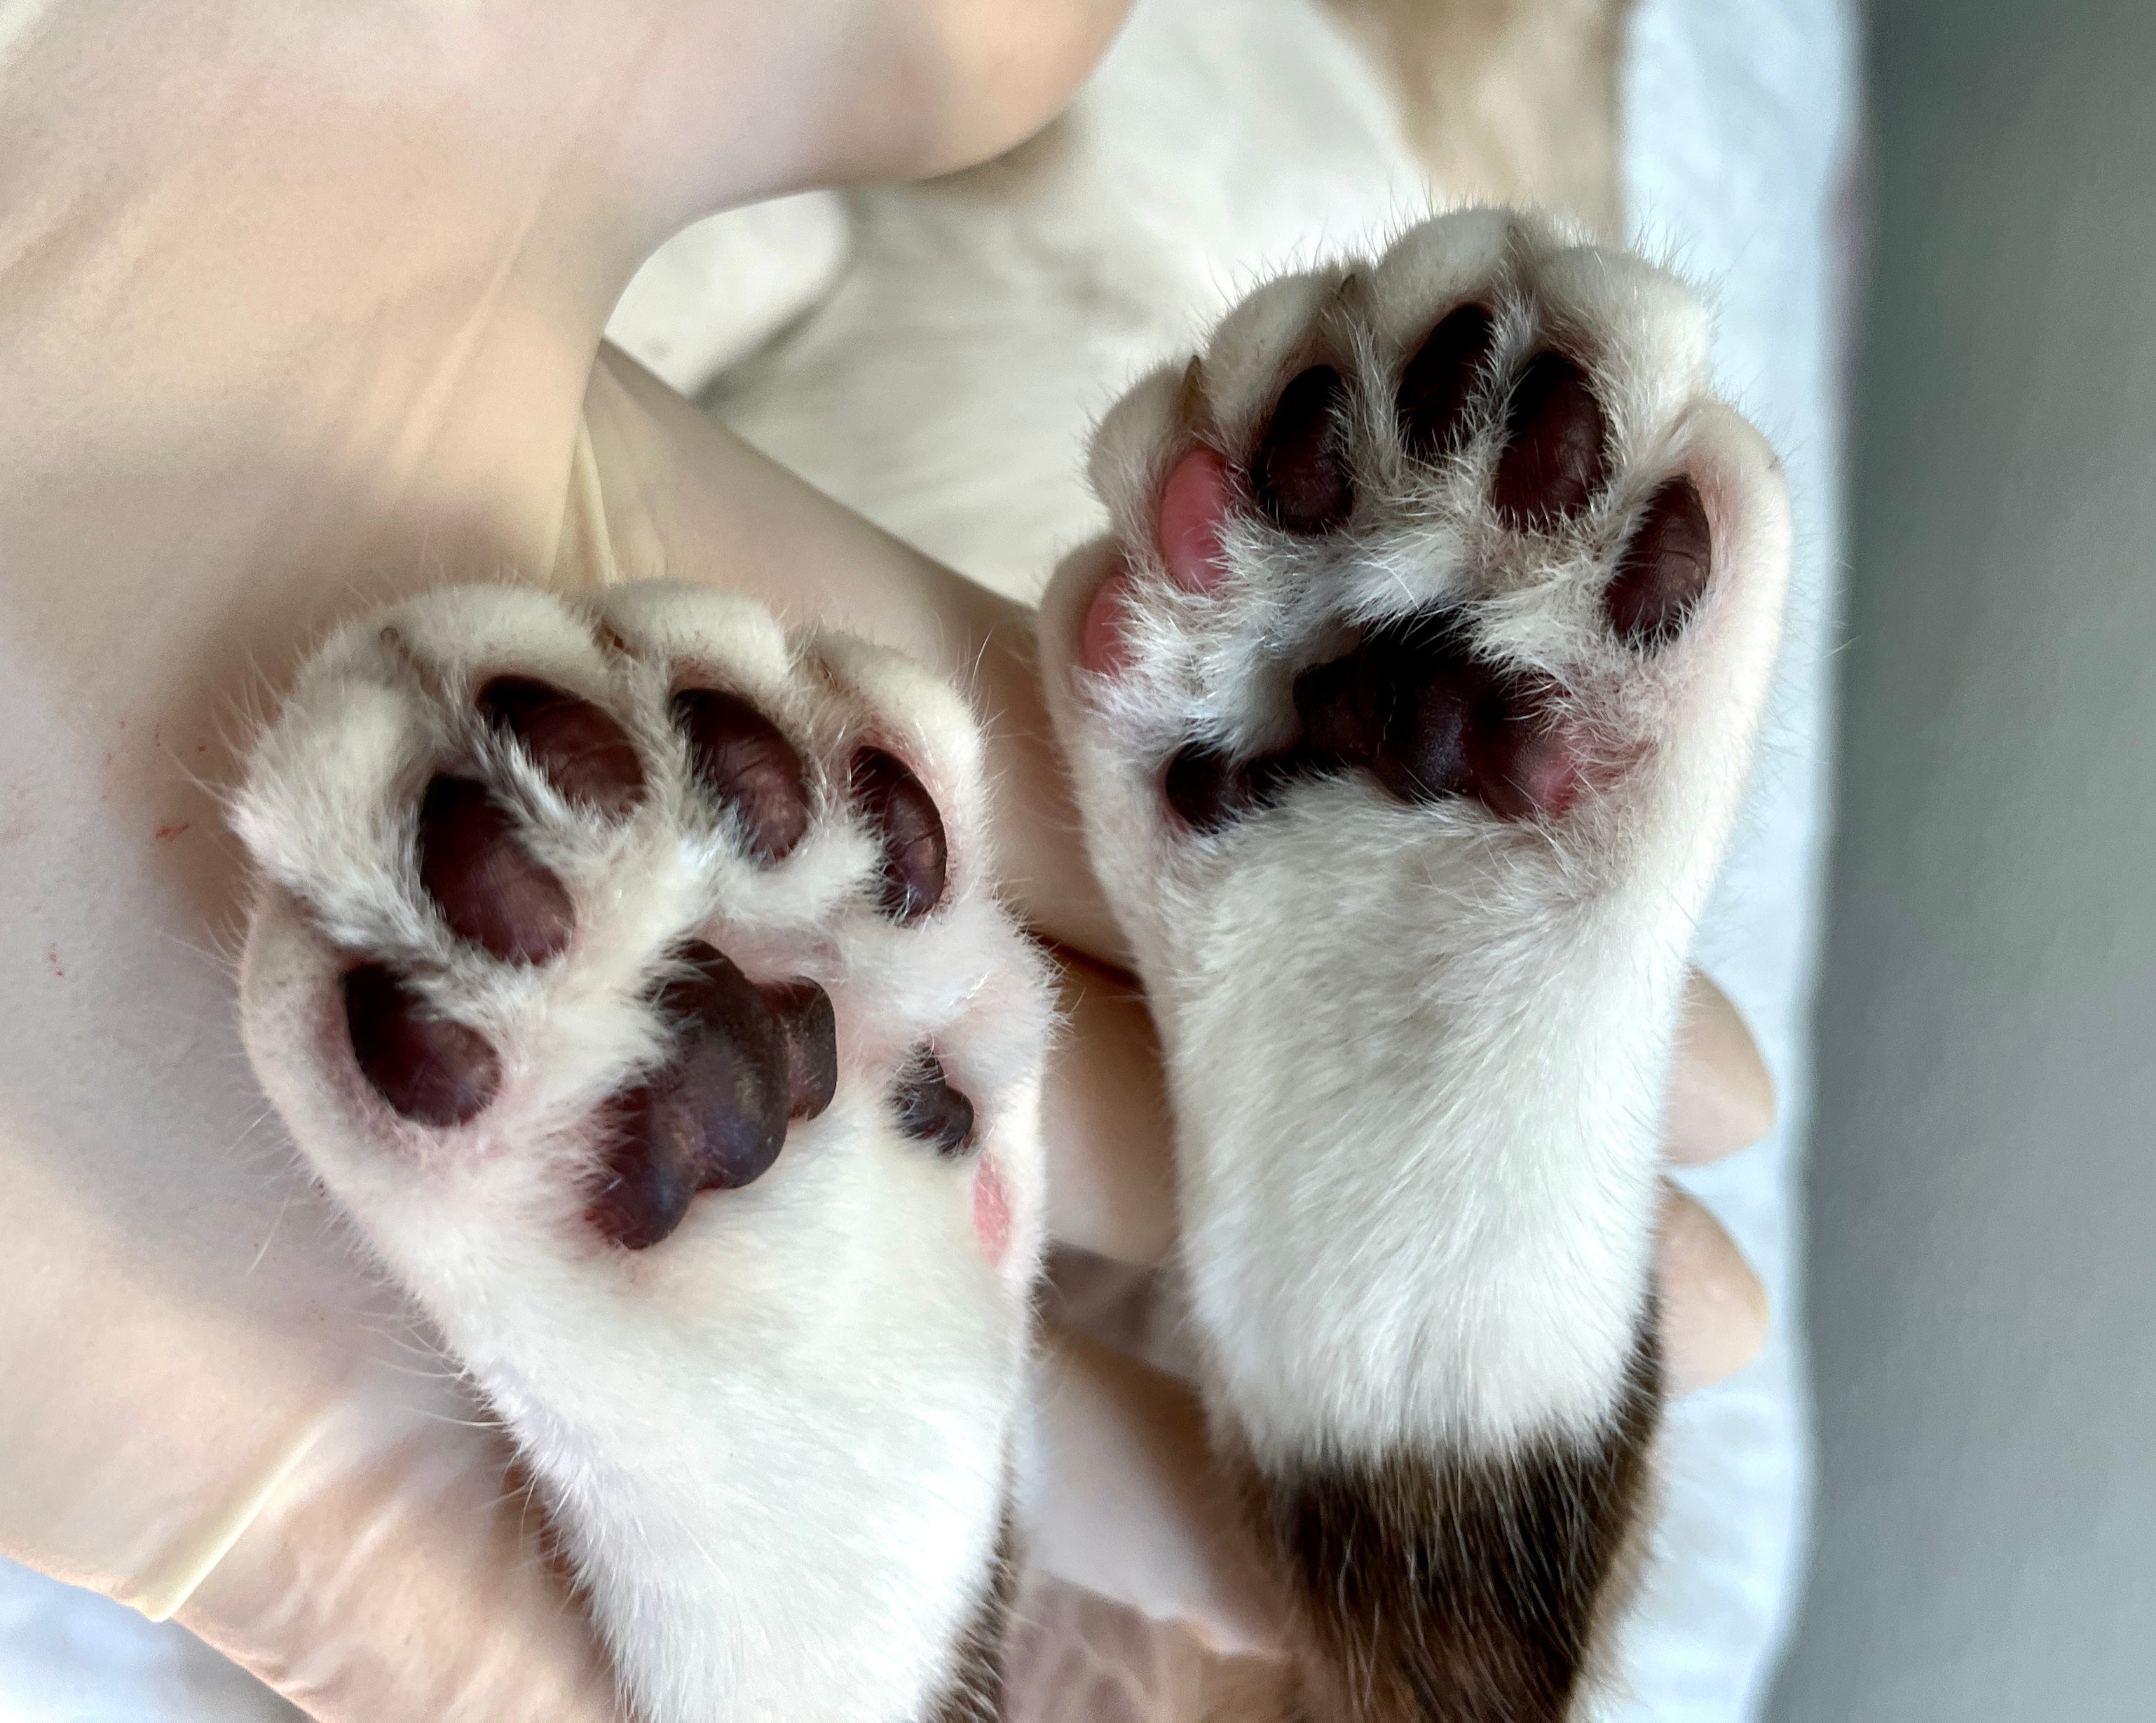 Patas de gato polidáctilo, com 6 dedos